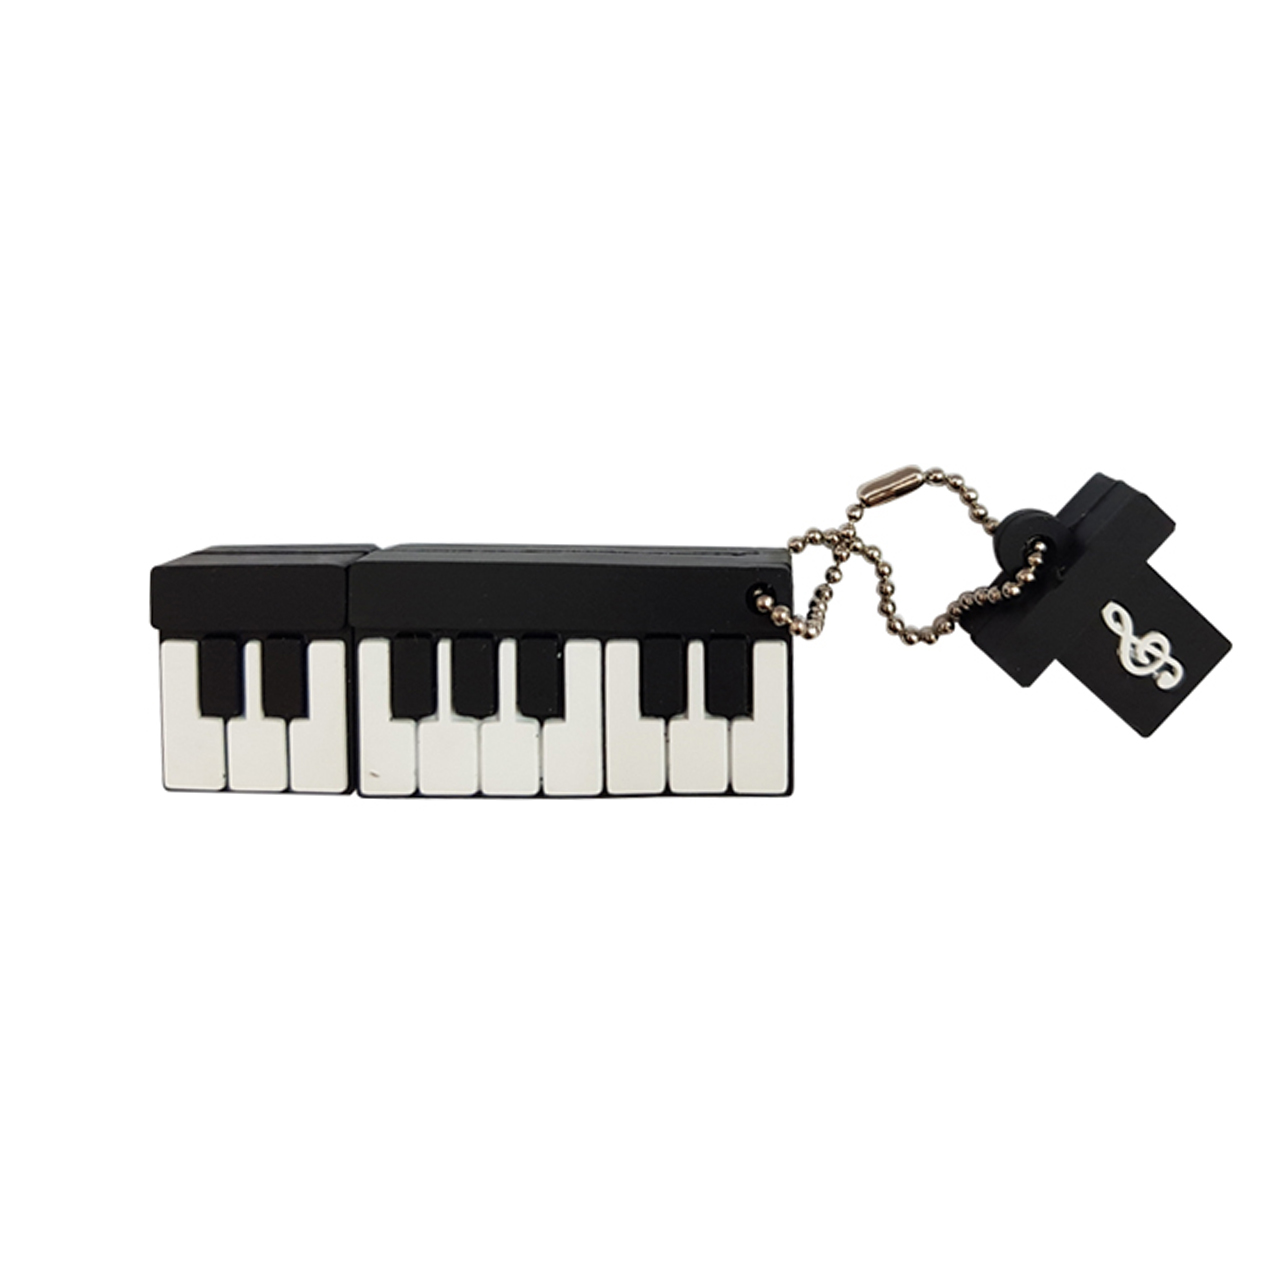 فلش مموری دایا دیتا طرح پیانو کوچک مدل PF1027-USB3 ظرفیت 64 گیگابایت